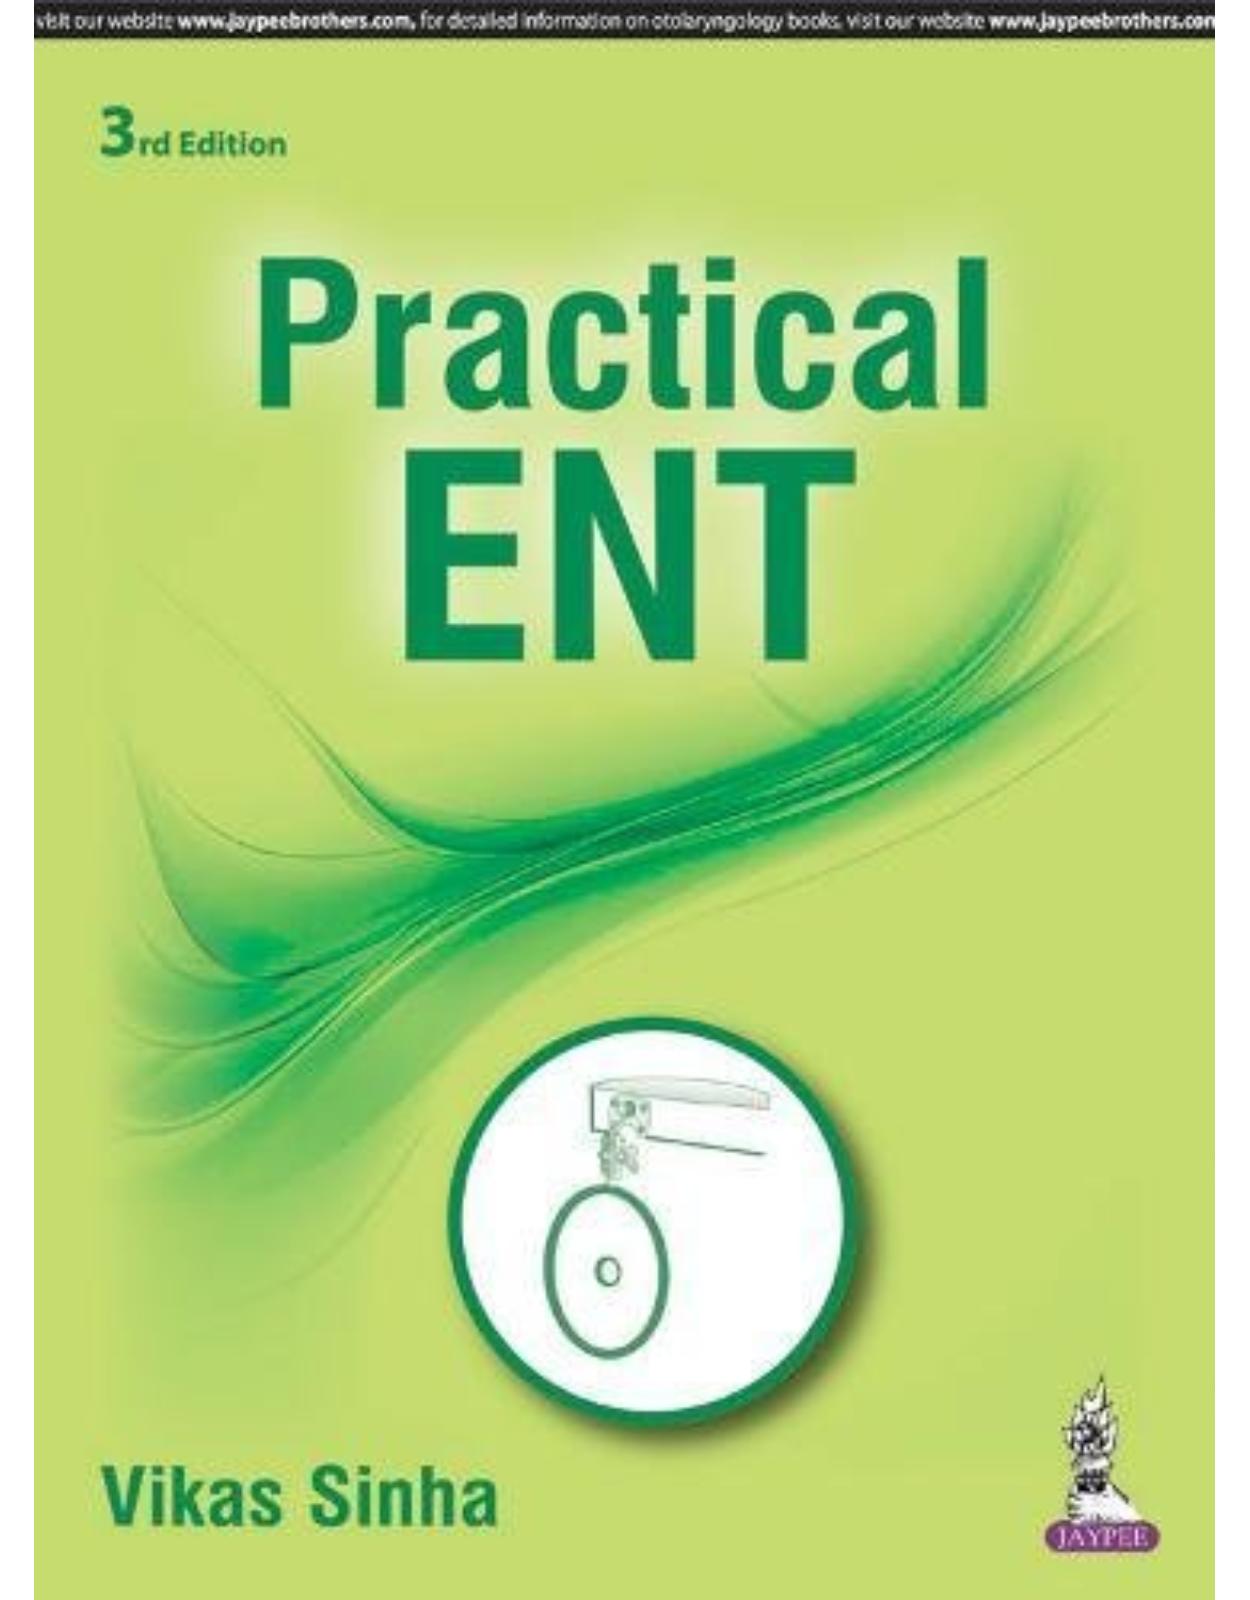 Practical Ent